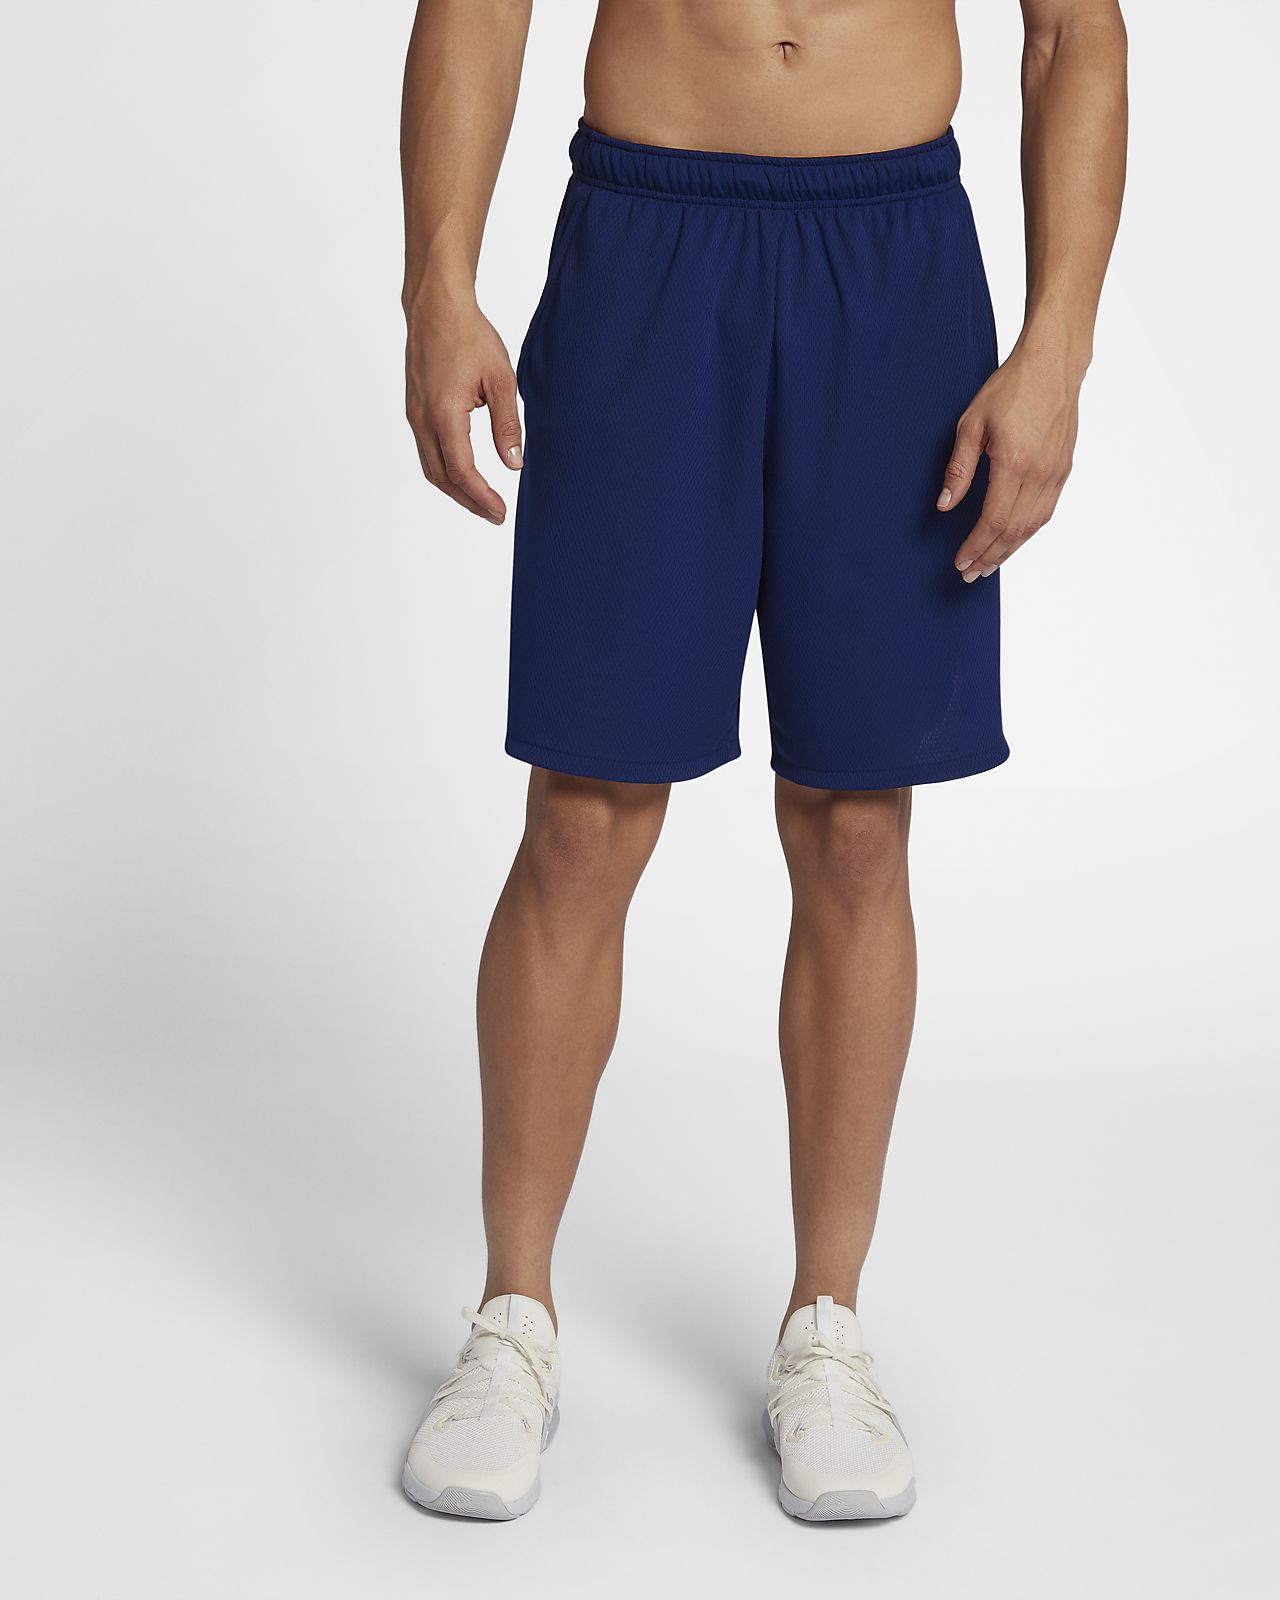 Nike Dri-FIT Men's Woven 9" Training Shorts